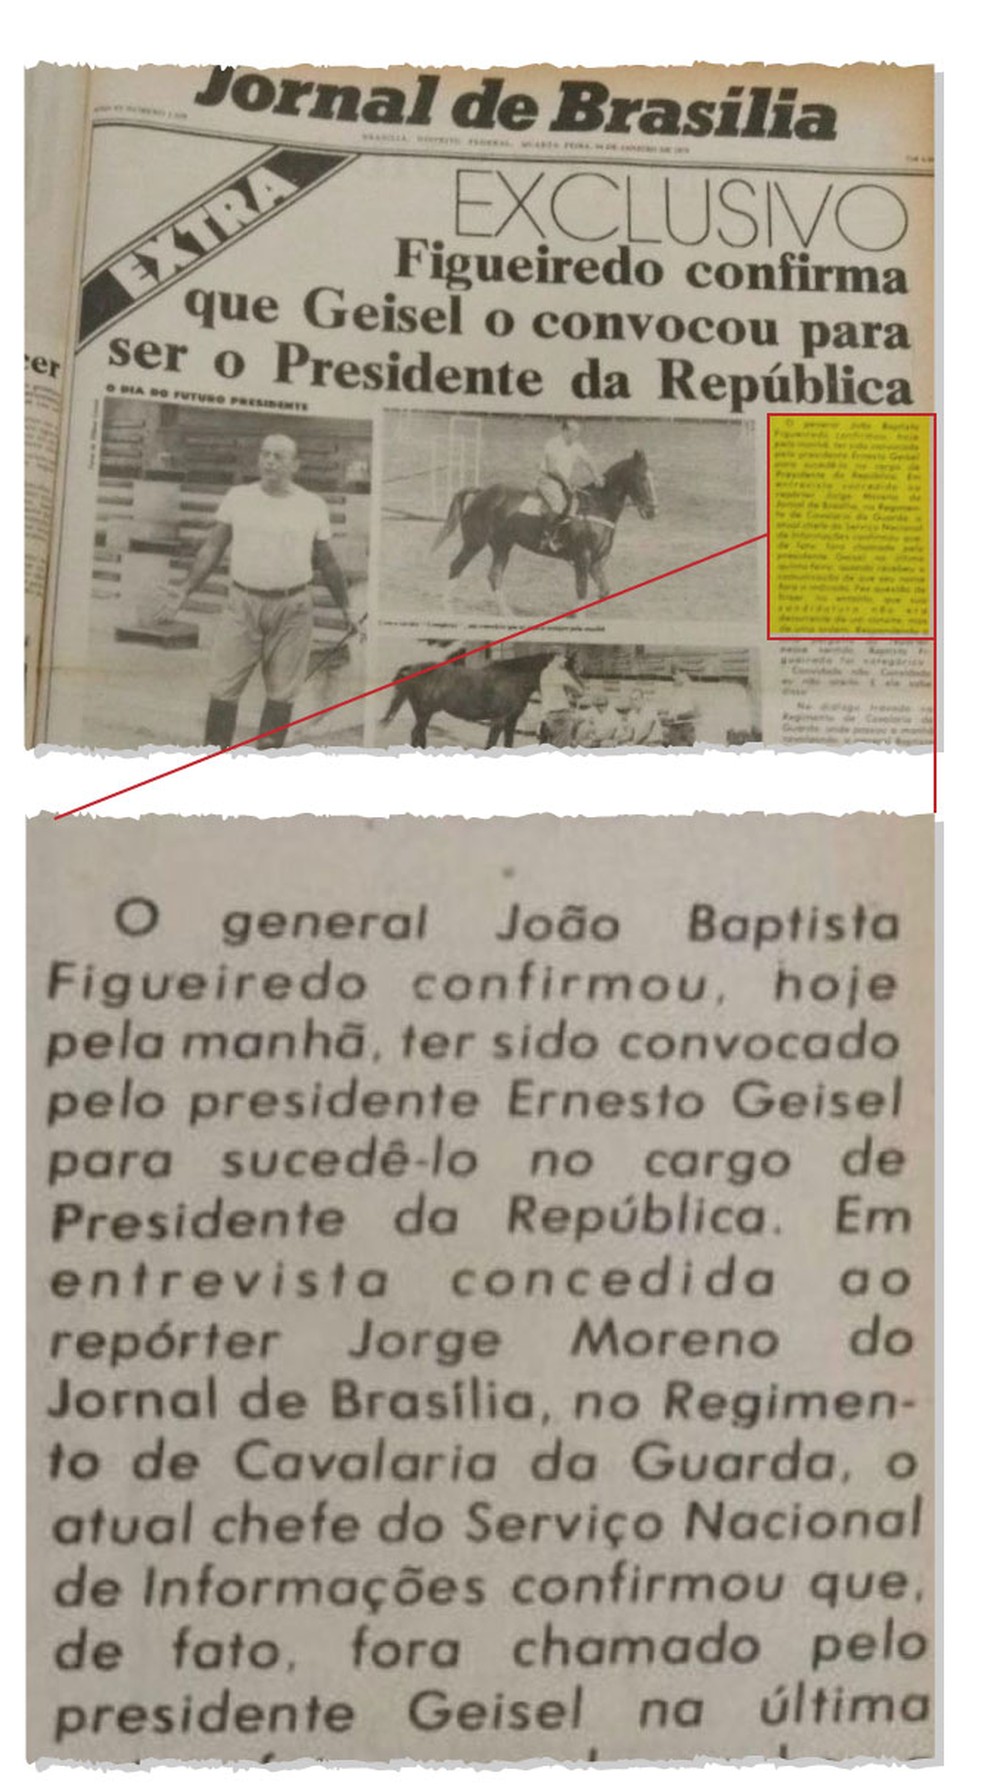 Um dos furos do jornalista Jorge Bastos Moreno, sobre o sucessor de Geisel na Presidência da República, foi publicado no 'Jornal de Brasília' (Foto: Reprodução/Jornal de Brasília)